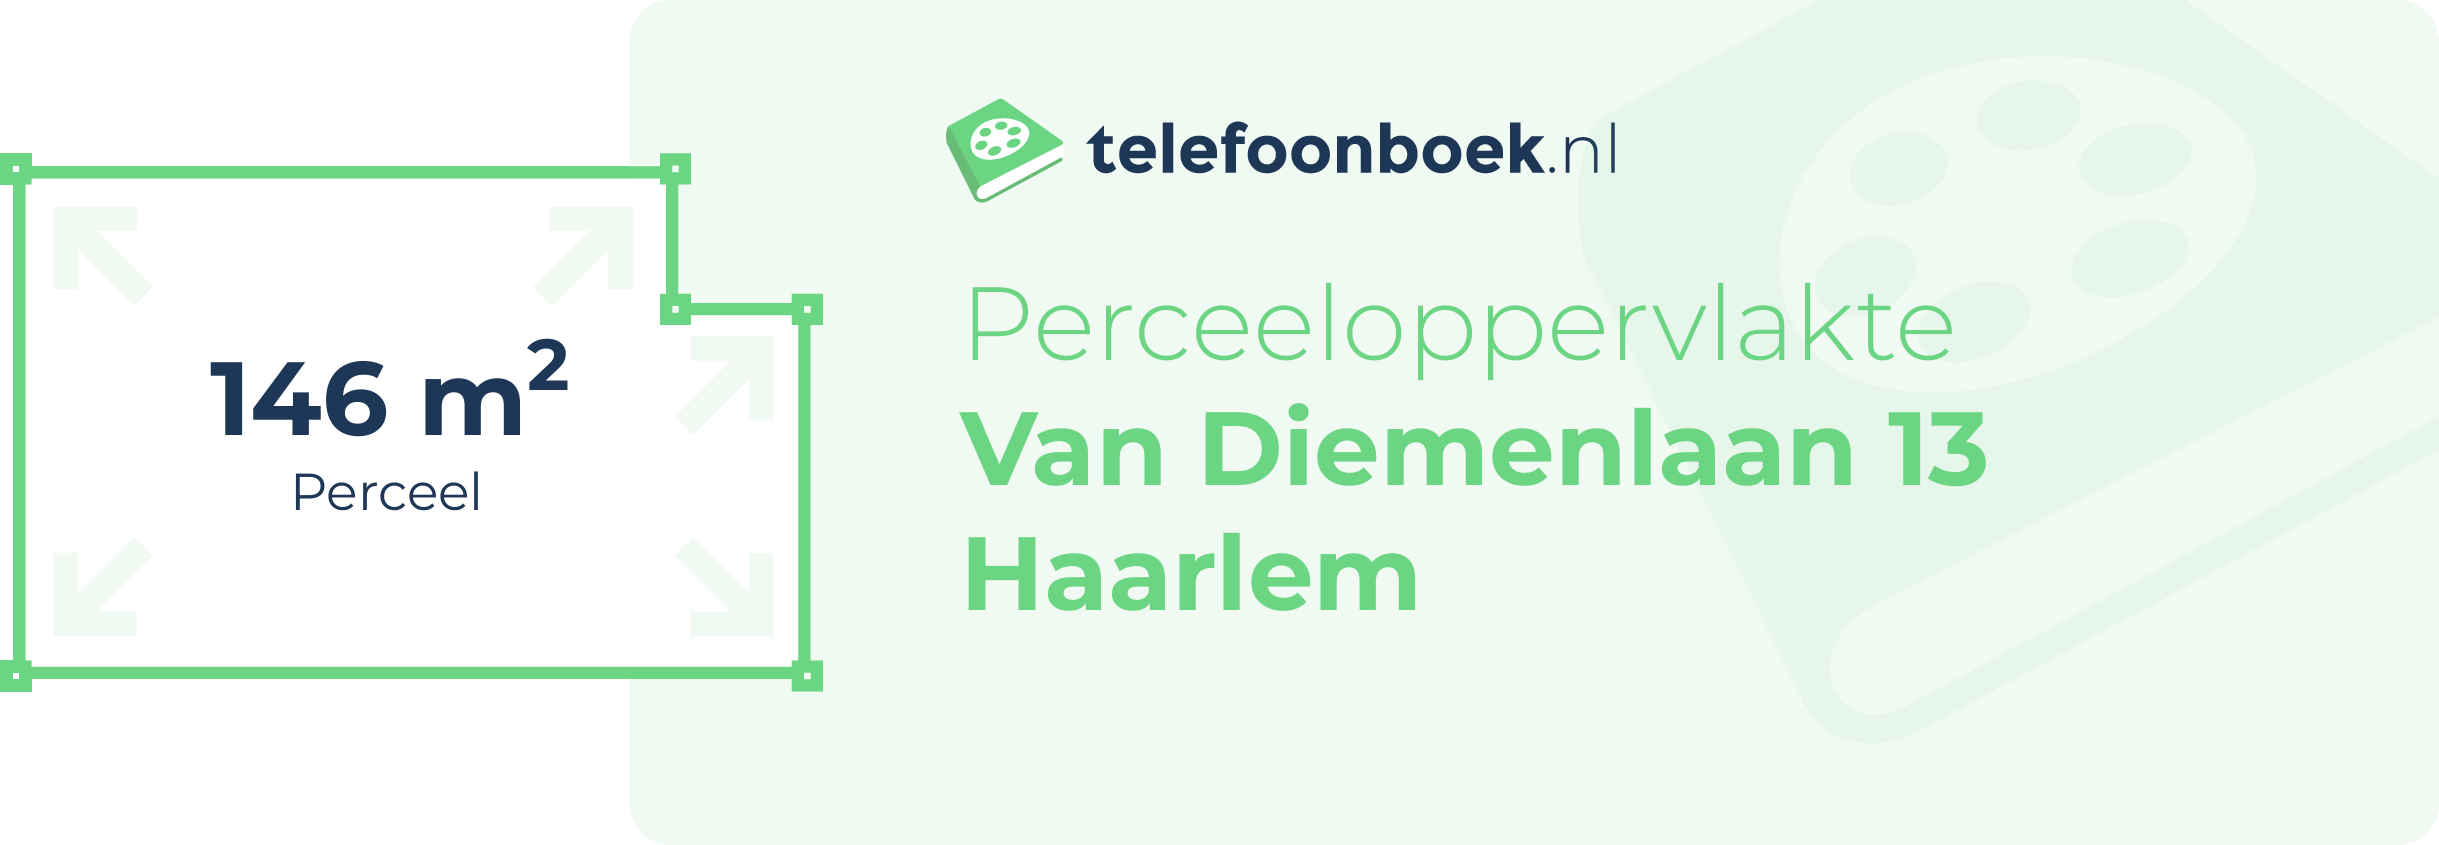 Perceeloppervlakte Van Diemenlaan 13 Haarlem